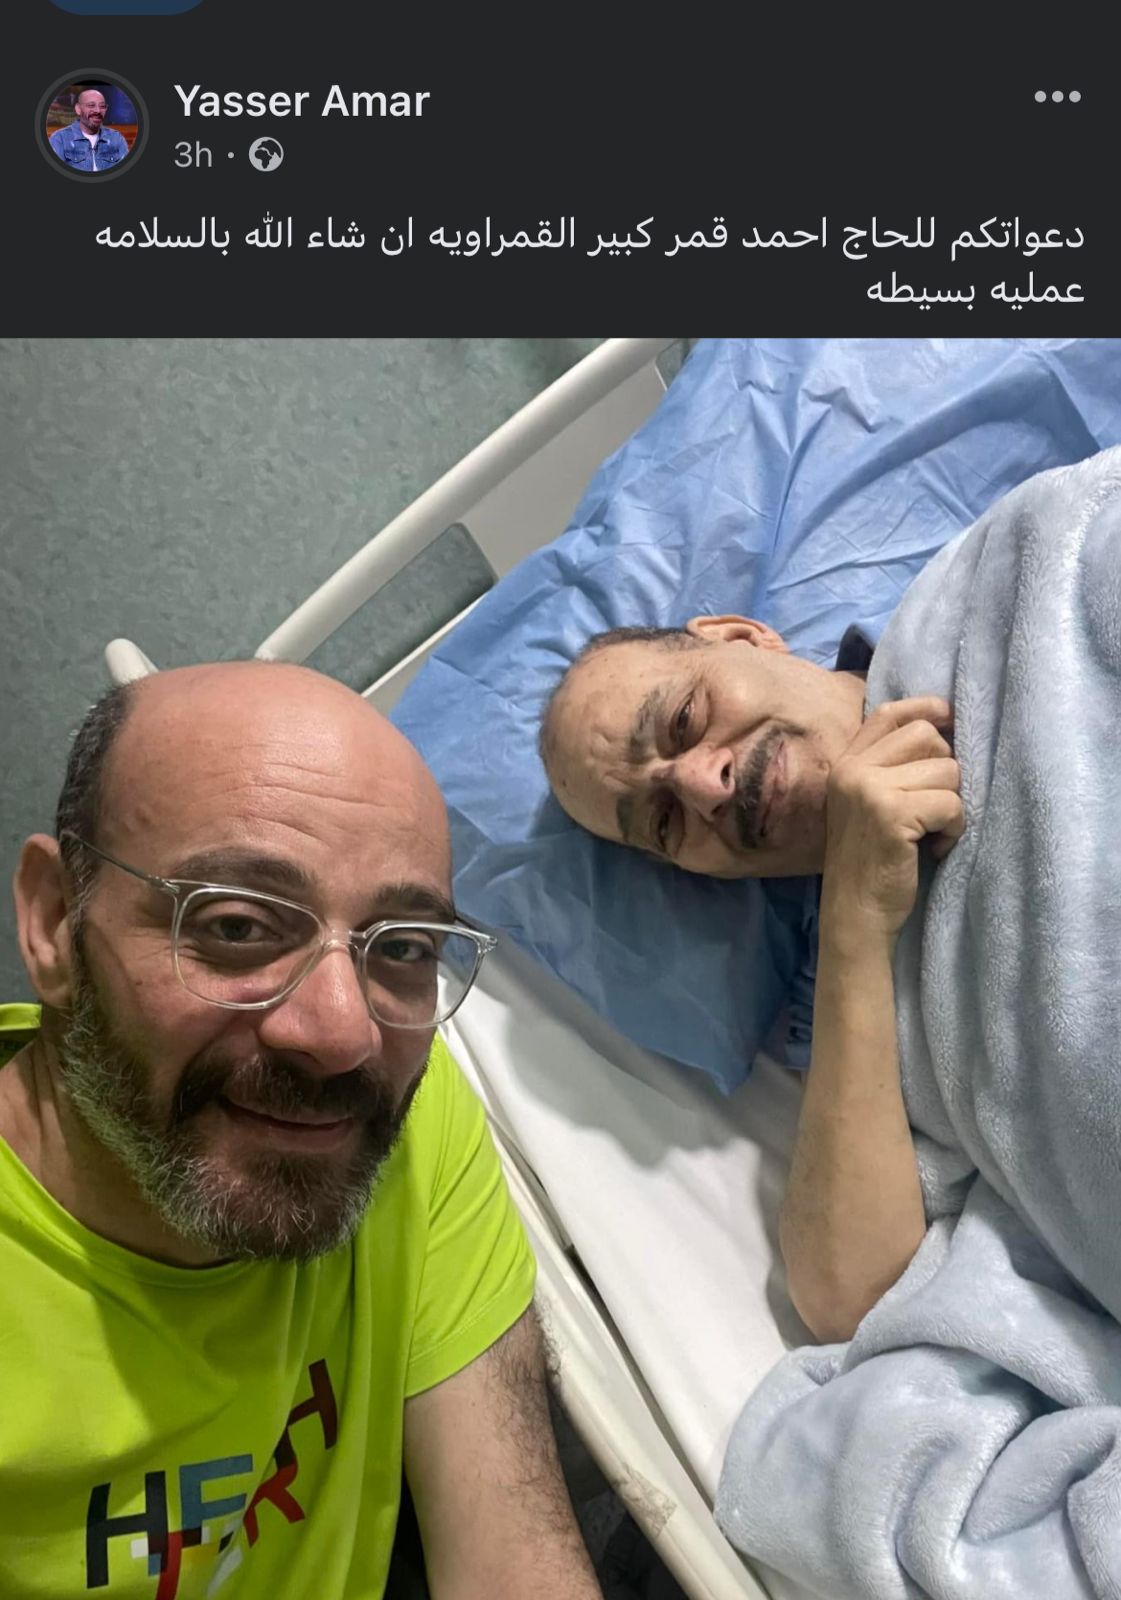 نقل والد مصطفى قمر للمستشفى